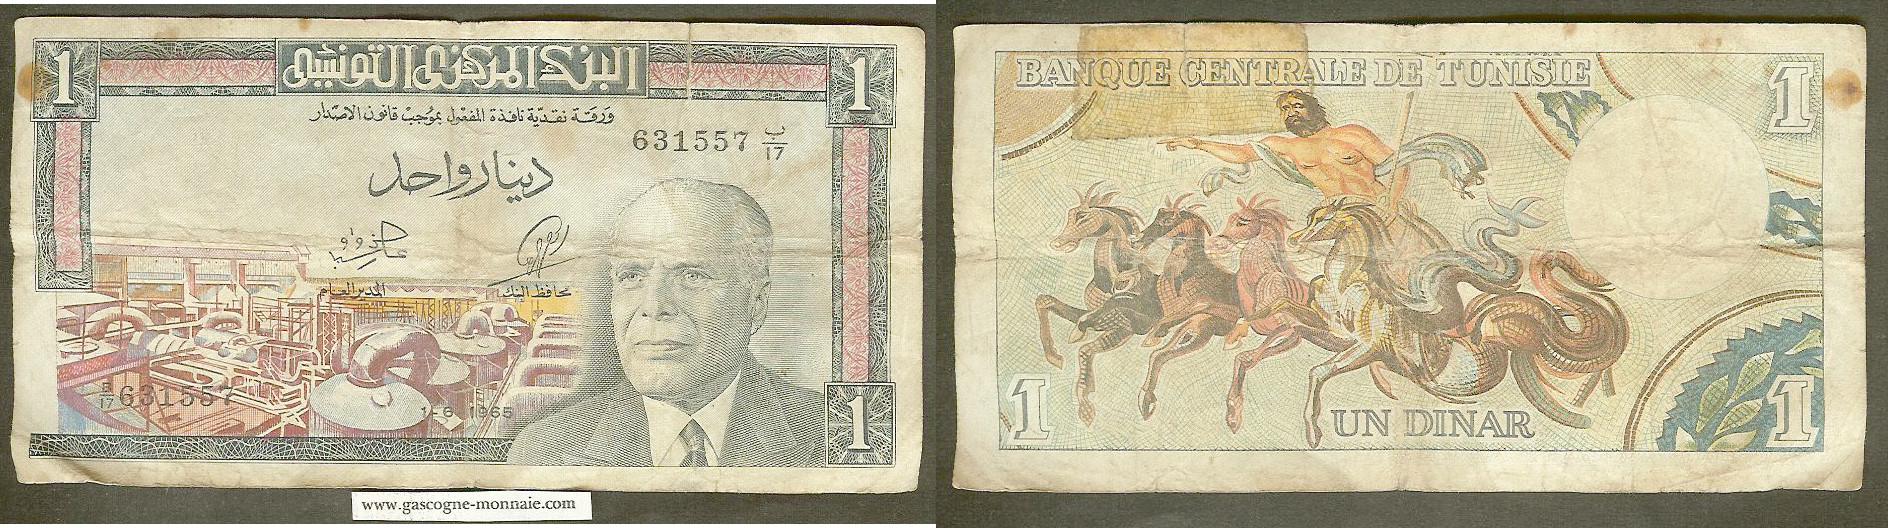 Tunisie 1 dinar 1965 TB+